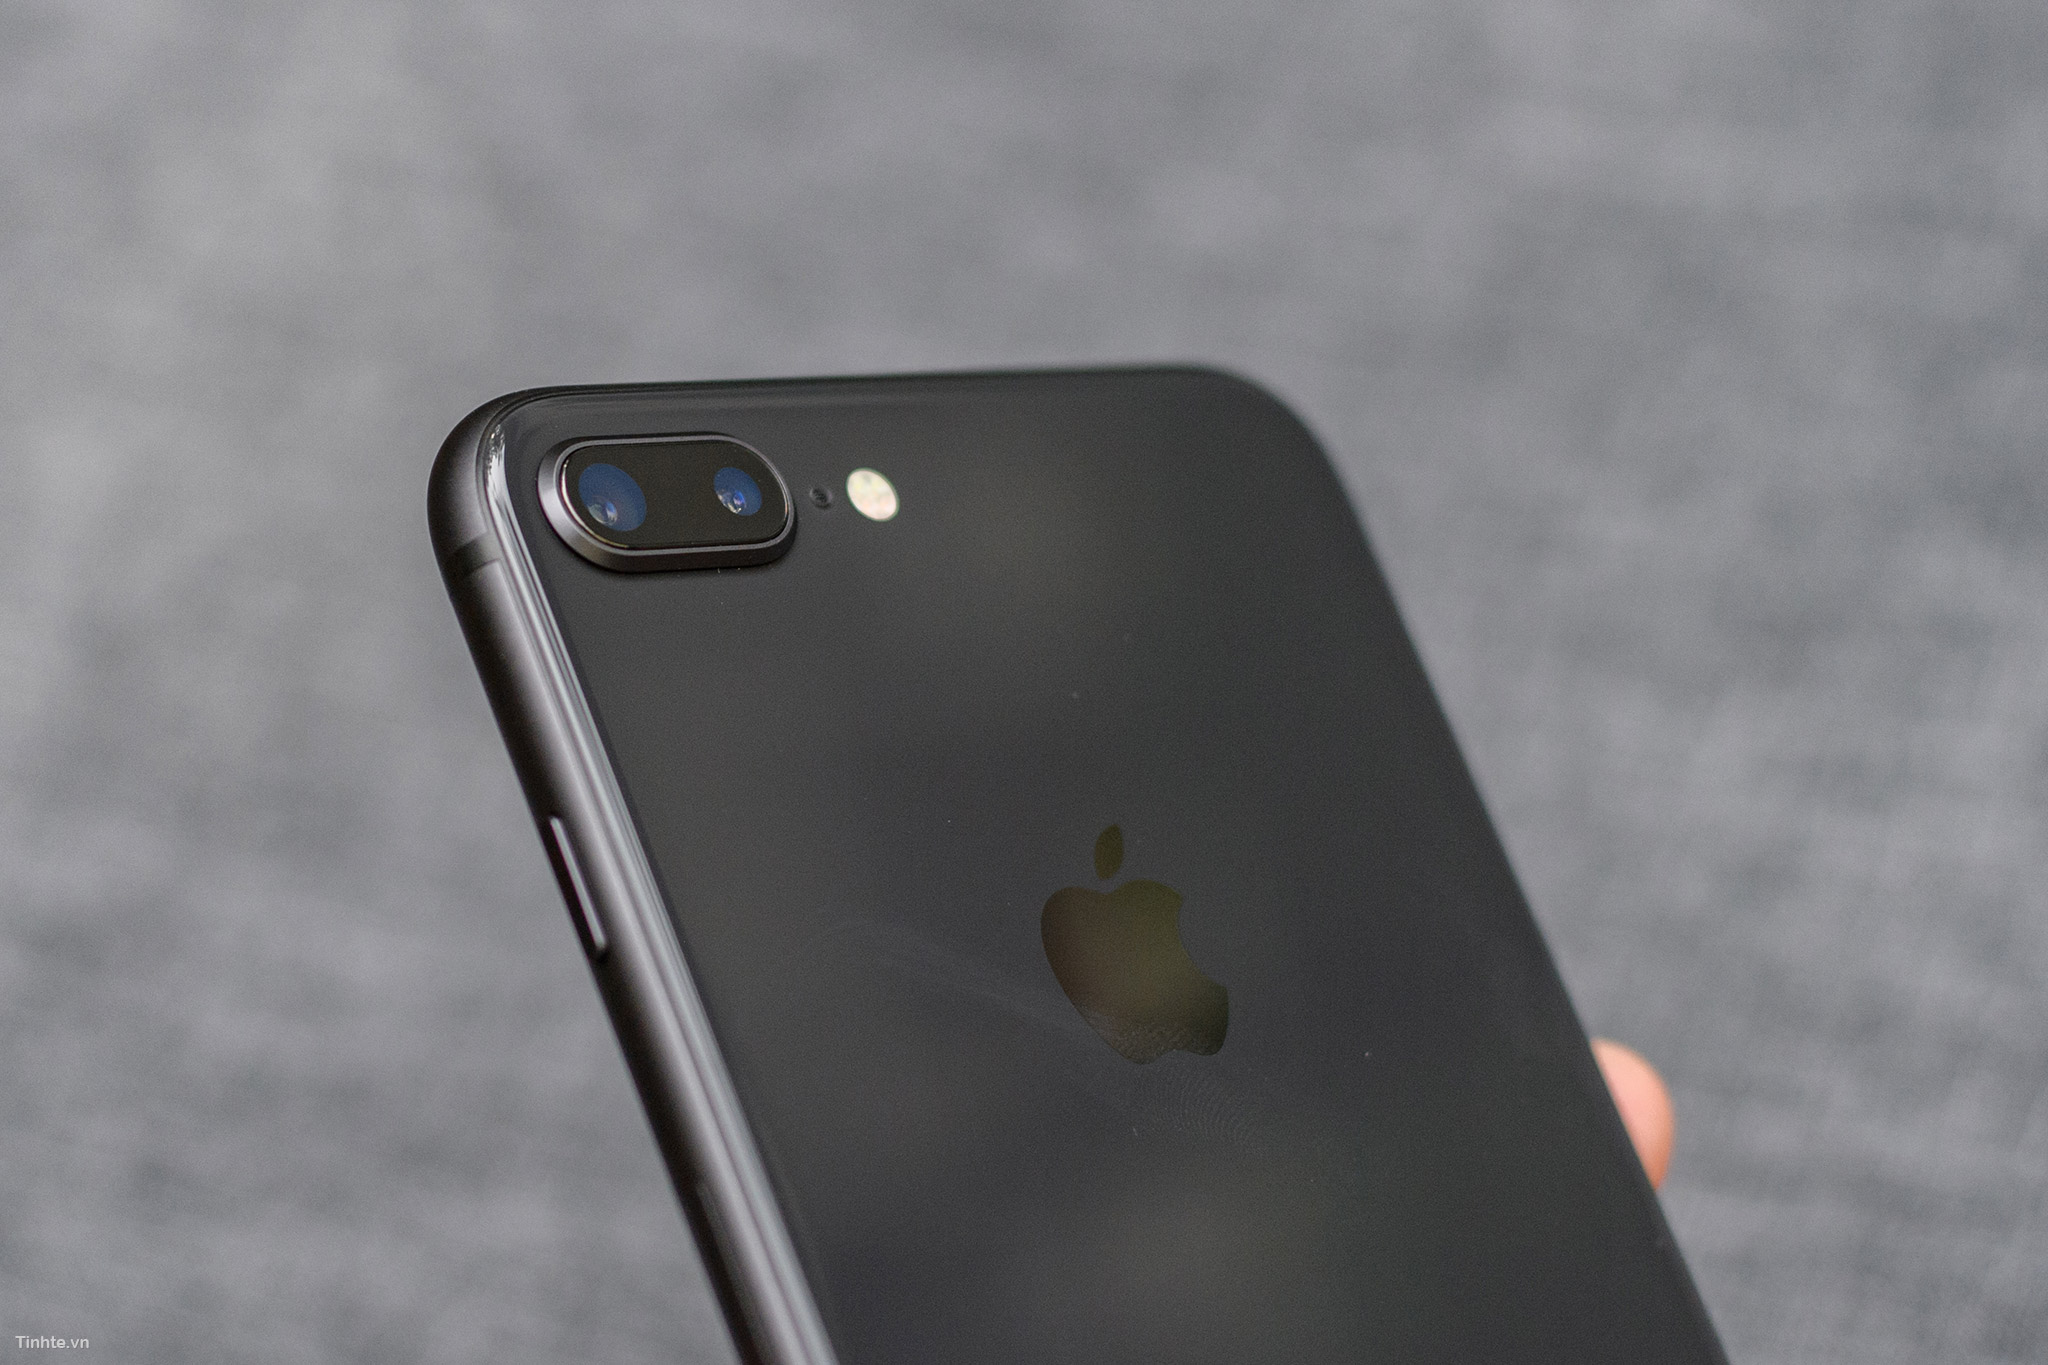 Đón đầu xu hướng với iPhone 8/8 Plus Space Gray, màu xám lông chuột đúng chuẩn sẽ mang đến một phong cách thời thượng và sang trọng khi sử dụng điện thoại của bạn. Khám phá ngay hình ảnh sản phẩm để cảm nhận được sự độc đáo và hiện đại của thiết kế này.